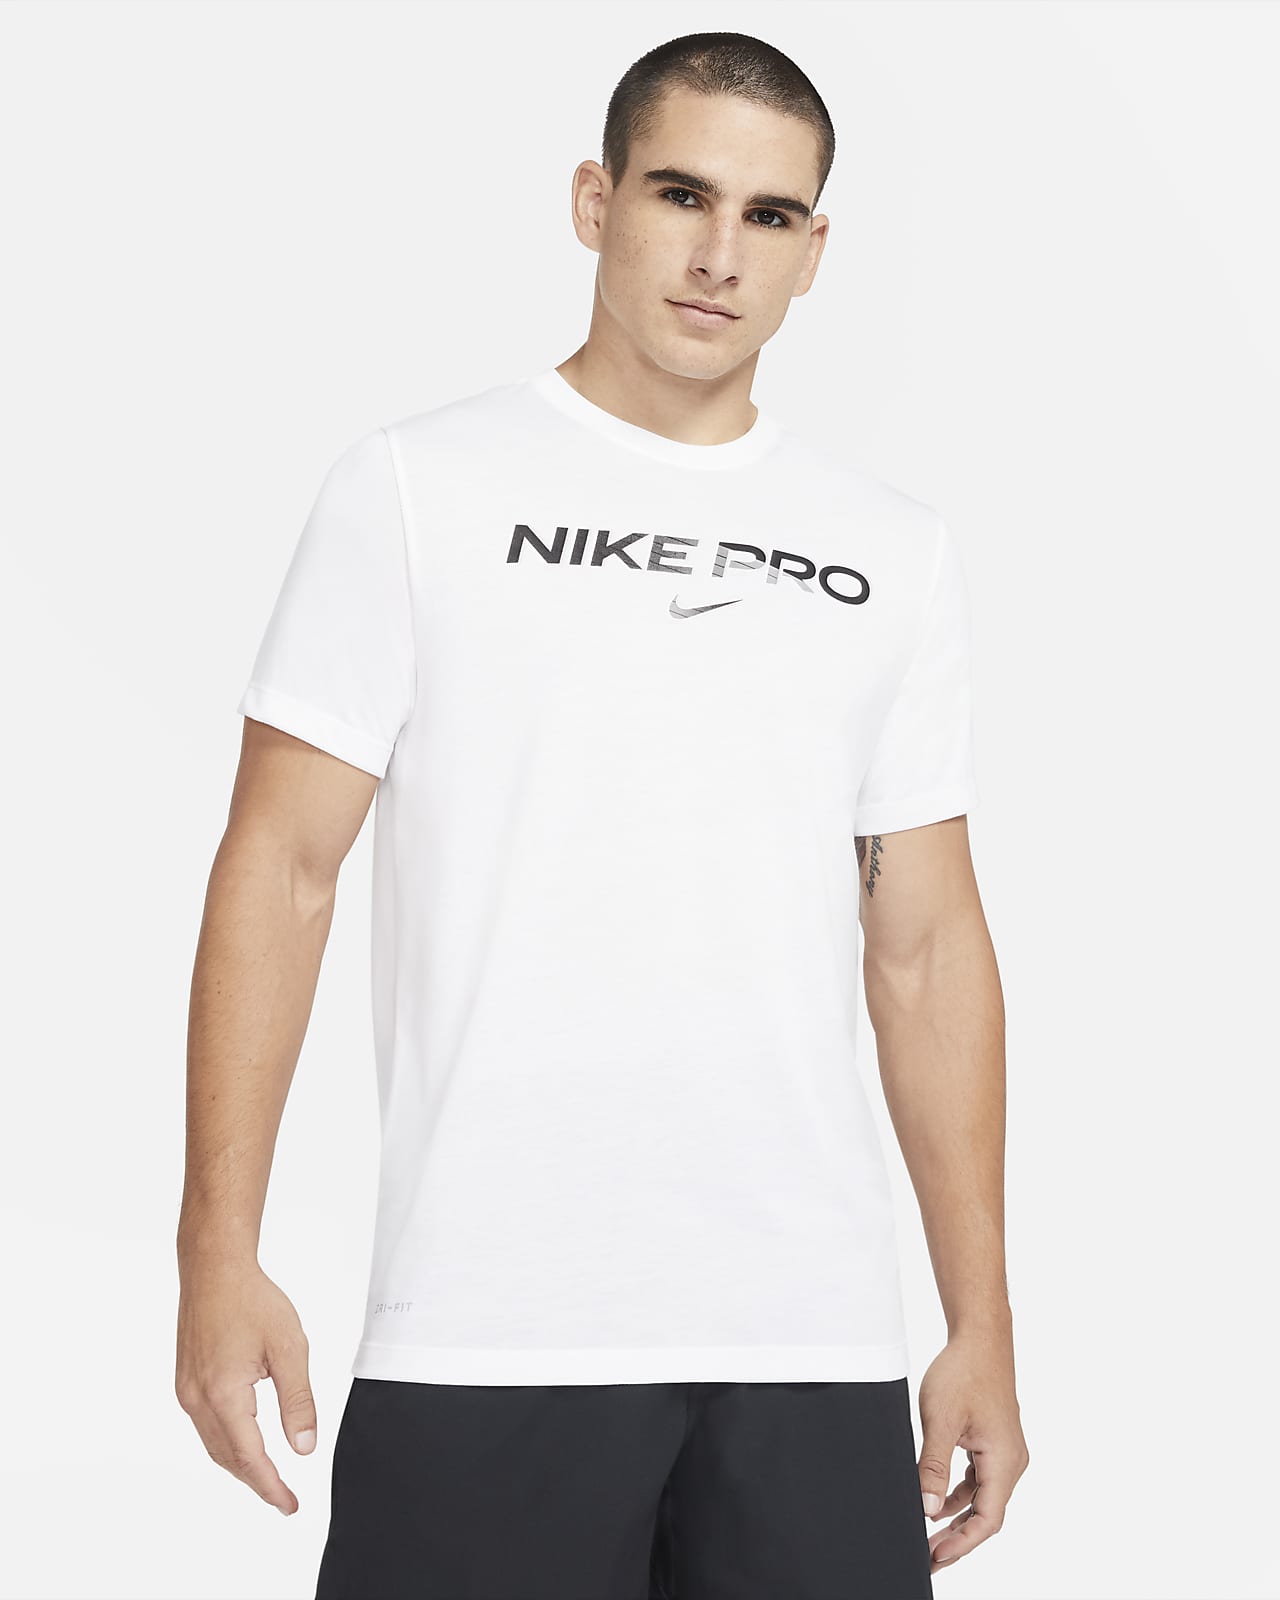 Nike Pro Men's T-Shirt